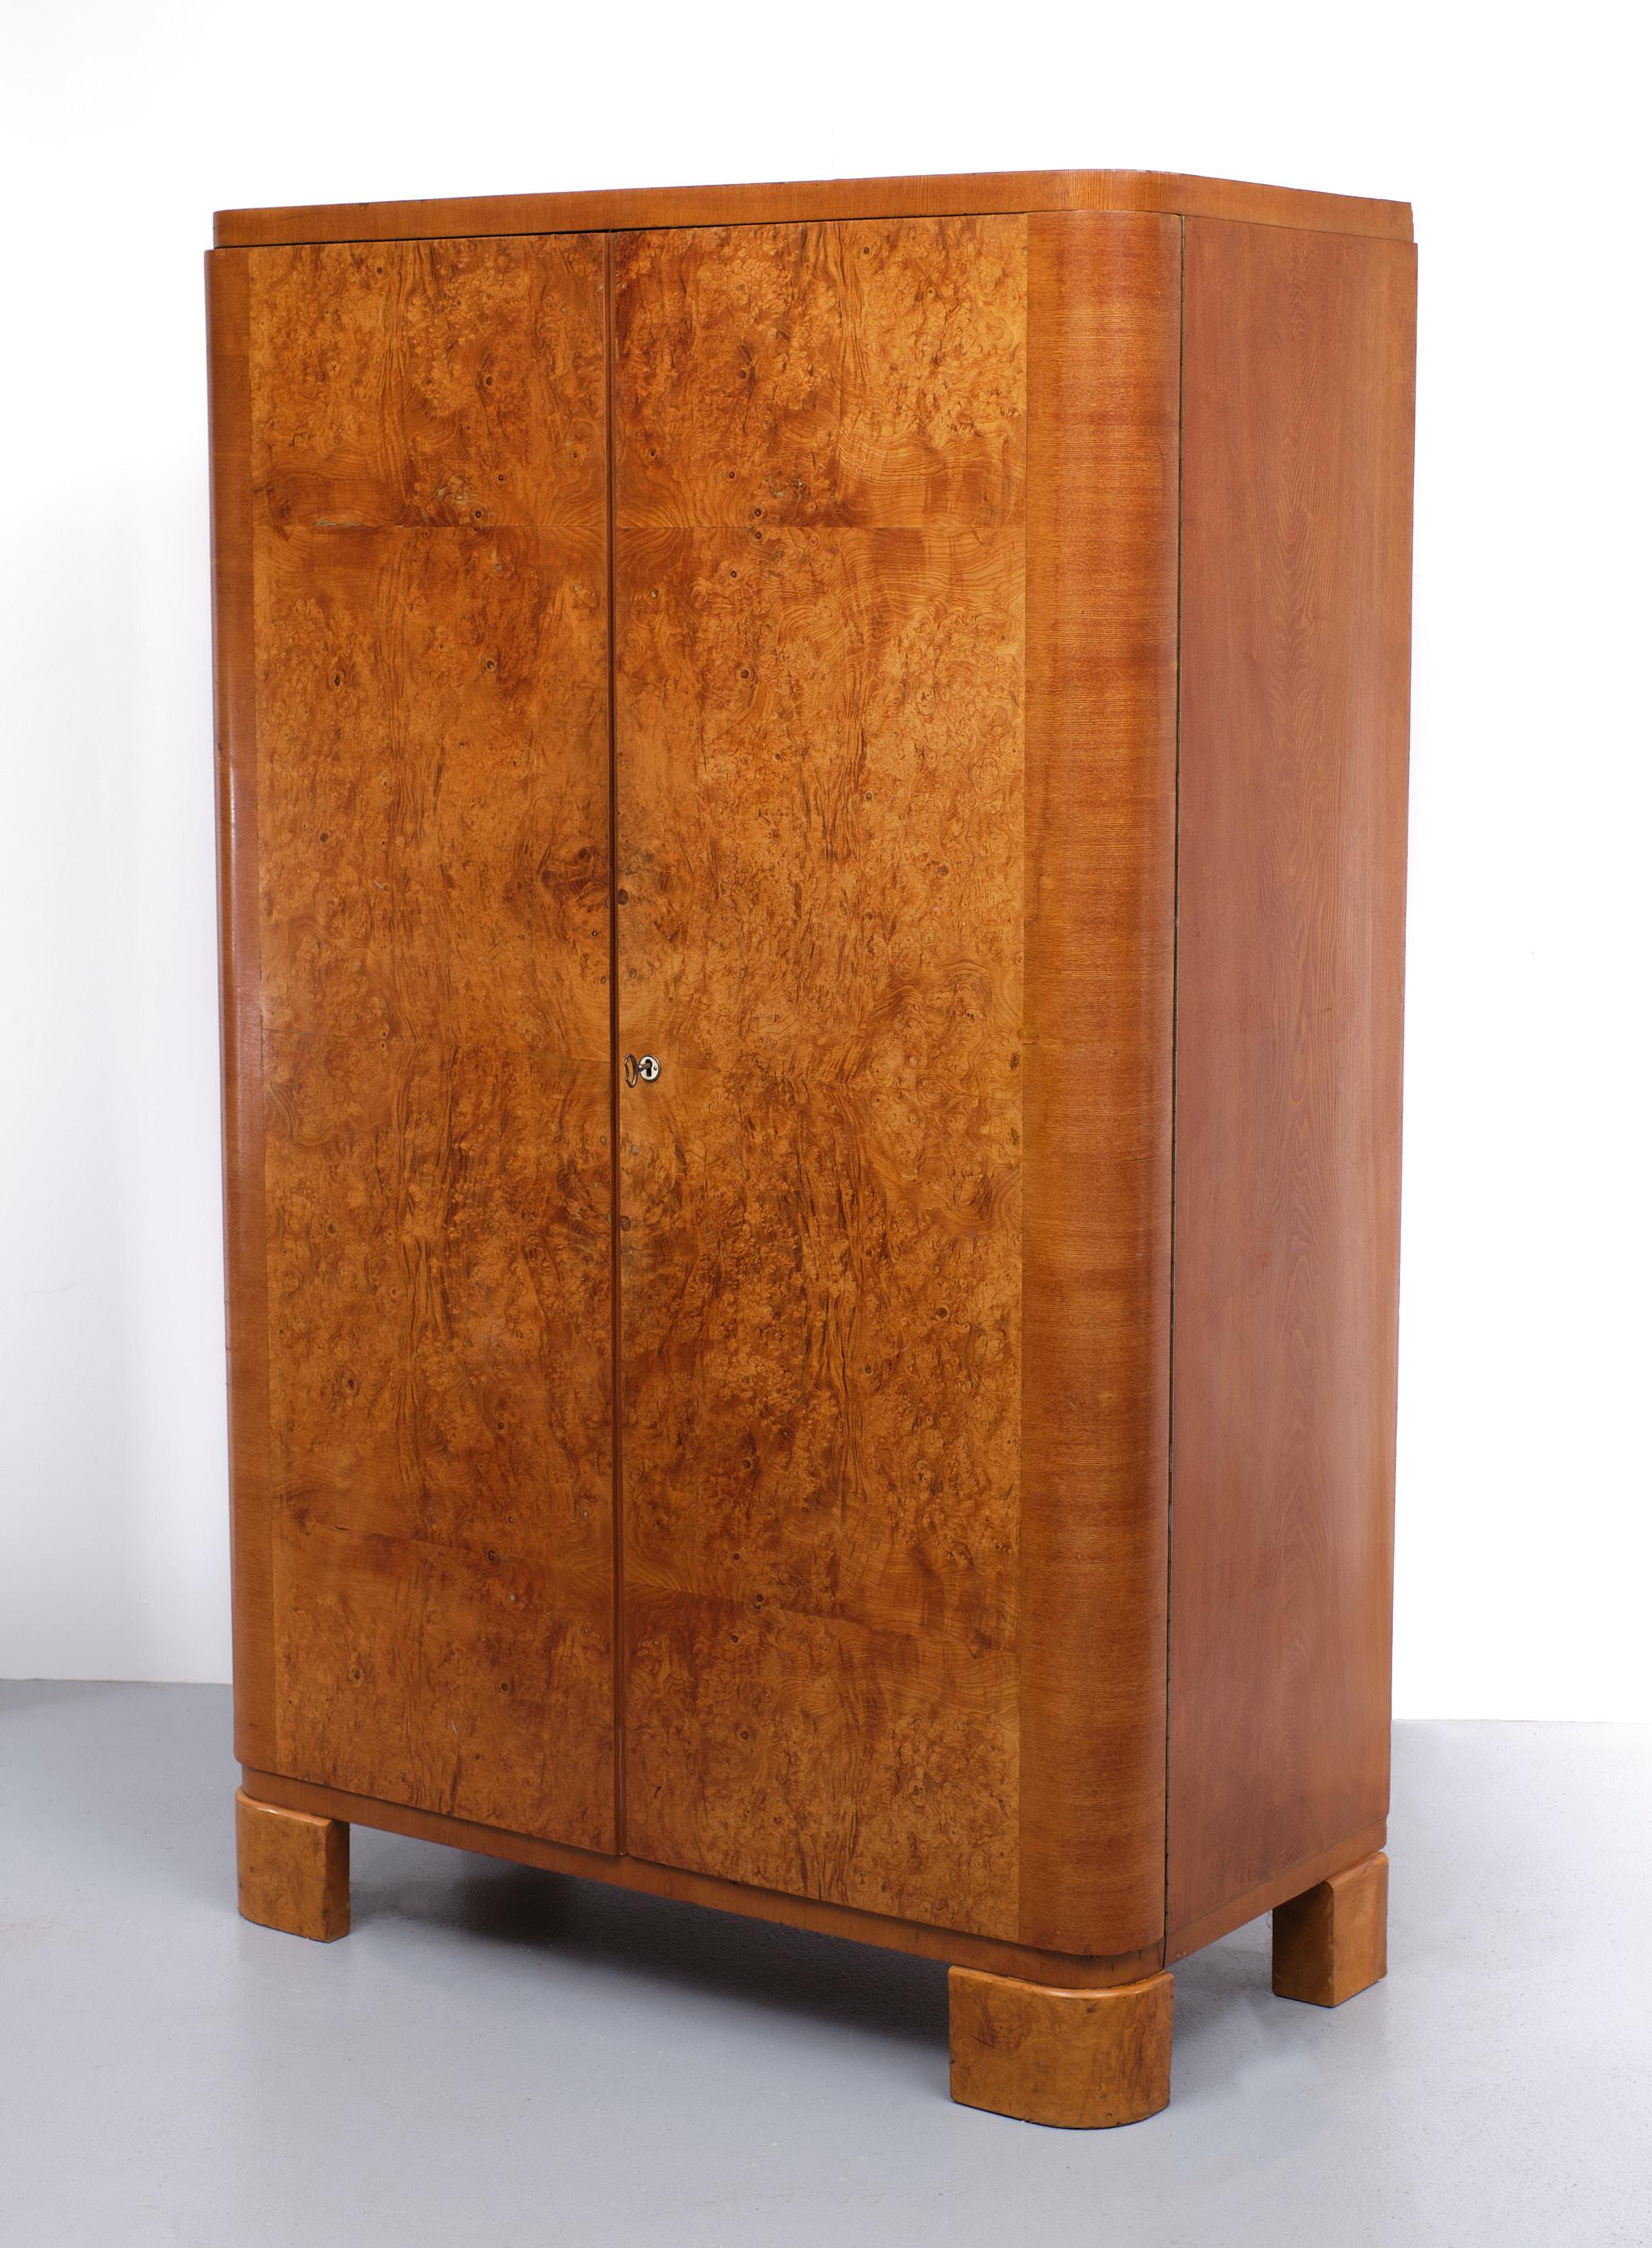 Belle et impressionnante armoire Art Déco en ronce de bois. Deux portes  Très bien.  couleur . est livré avec son intérieur d'origine 4 étagères en acajou massif . et un tiroir de fond . avec poignées chromées .
Il s'agit d'une véritable pièce